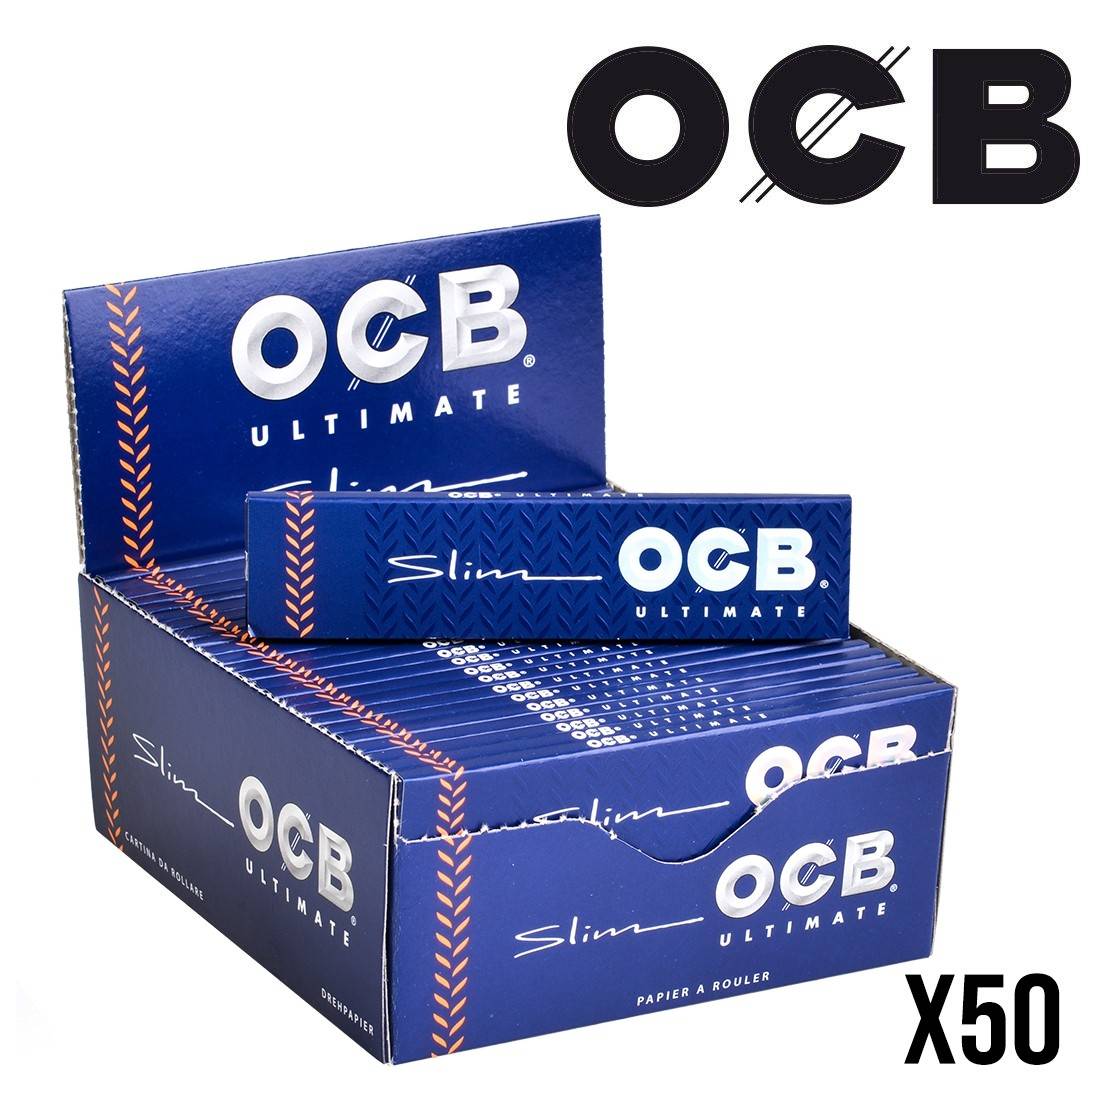 Papier à rouler OCB Chanvre Bio x 50 - 34,90€